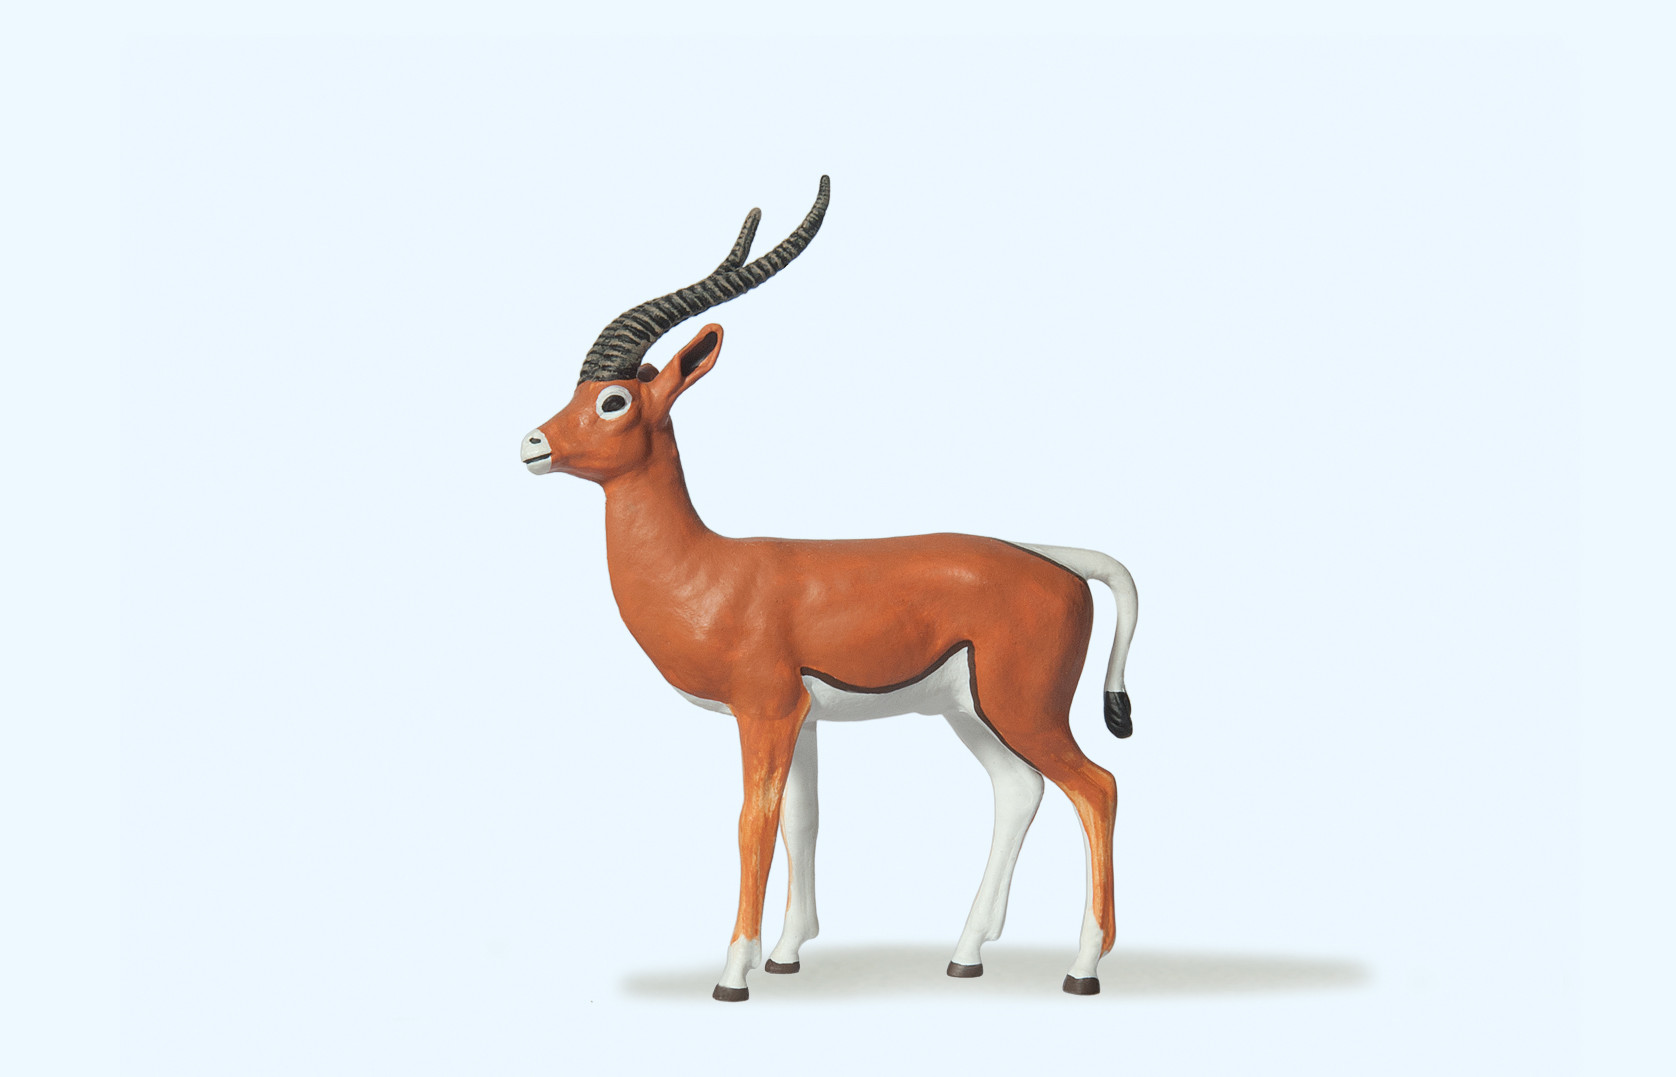 Gazelle Figure